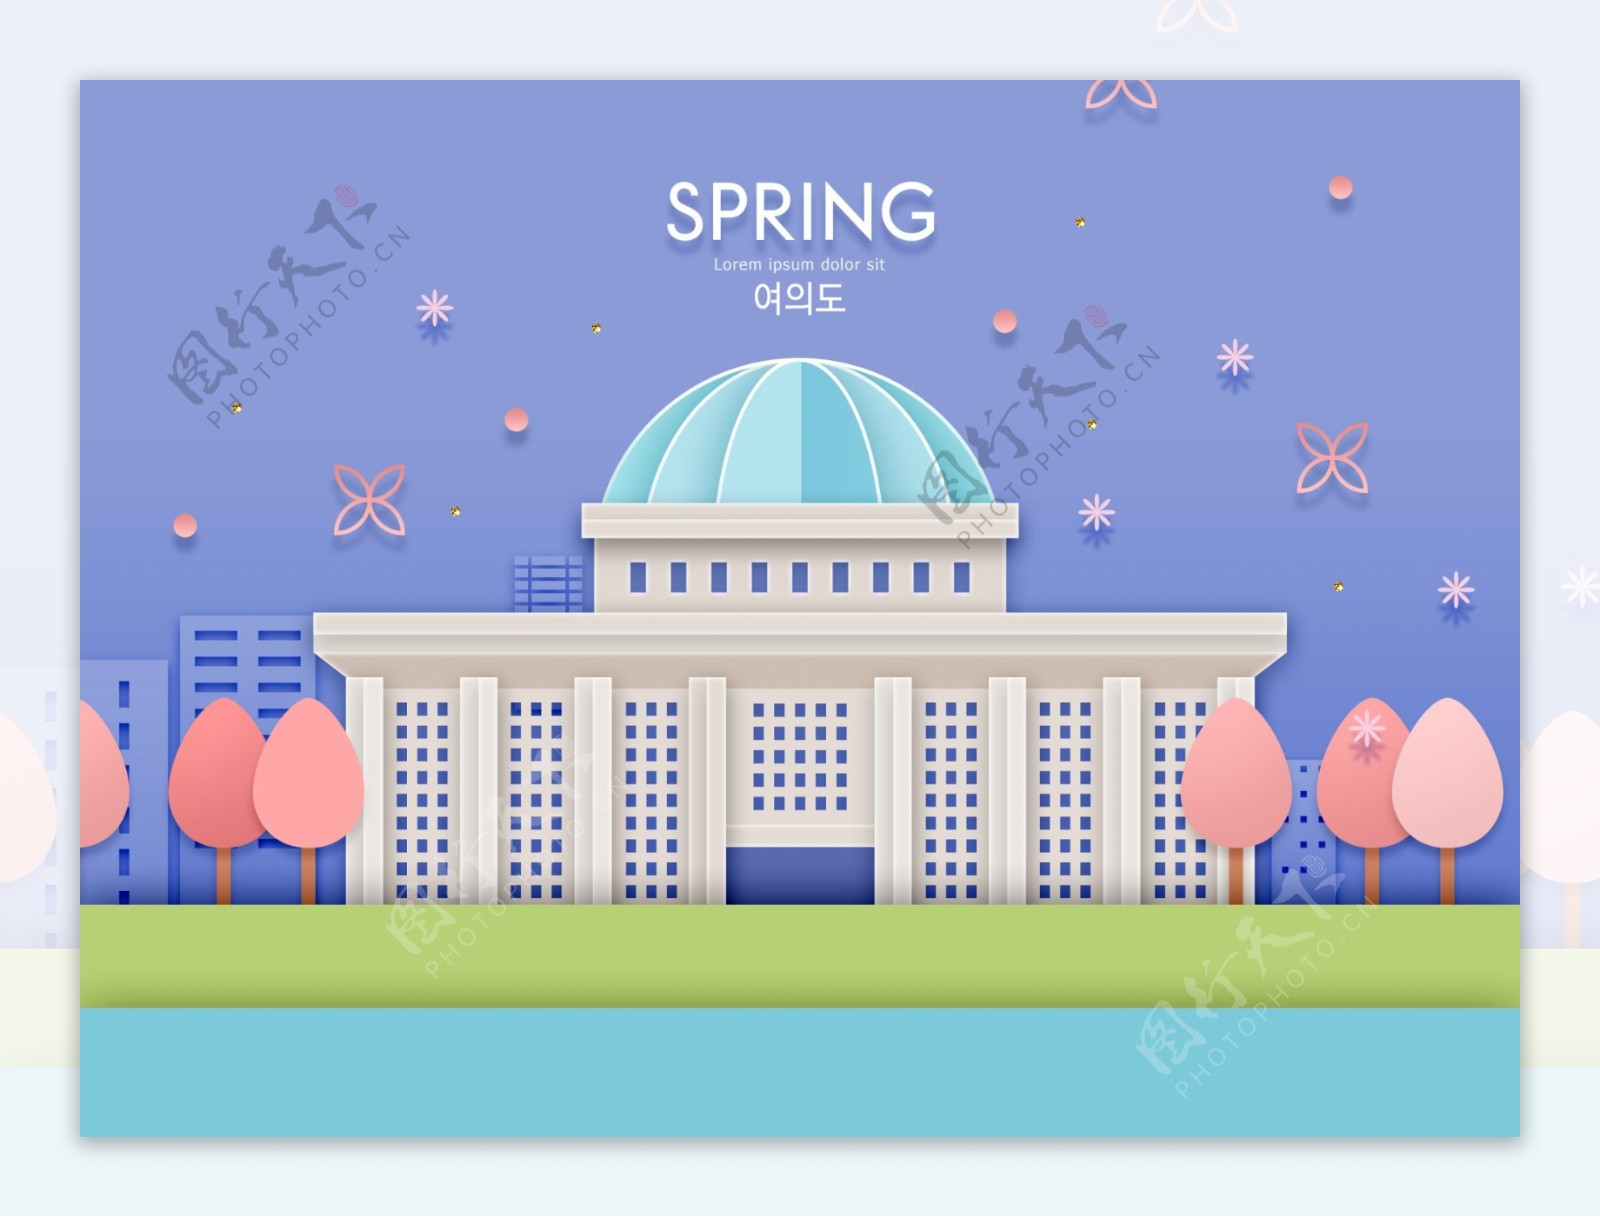 大气韩式春天气息立体建筑海报模板设计